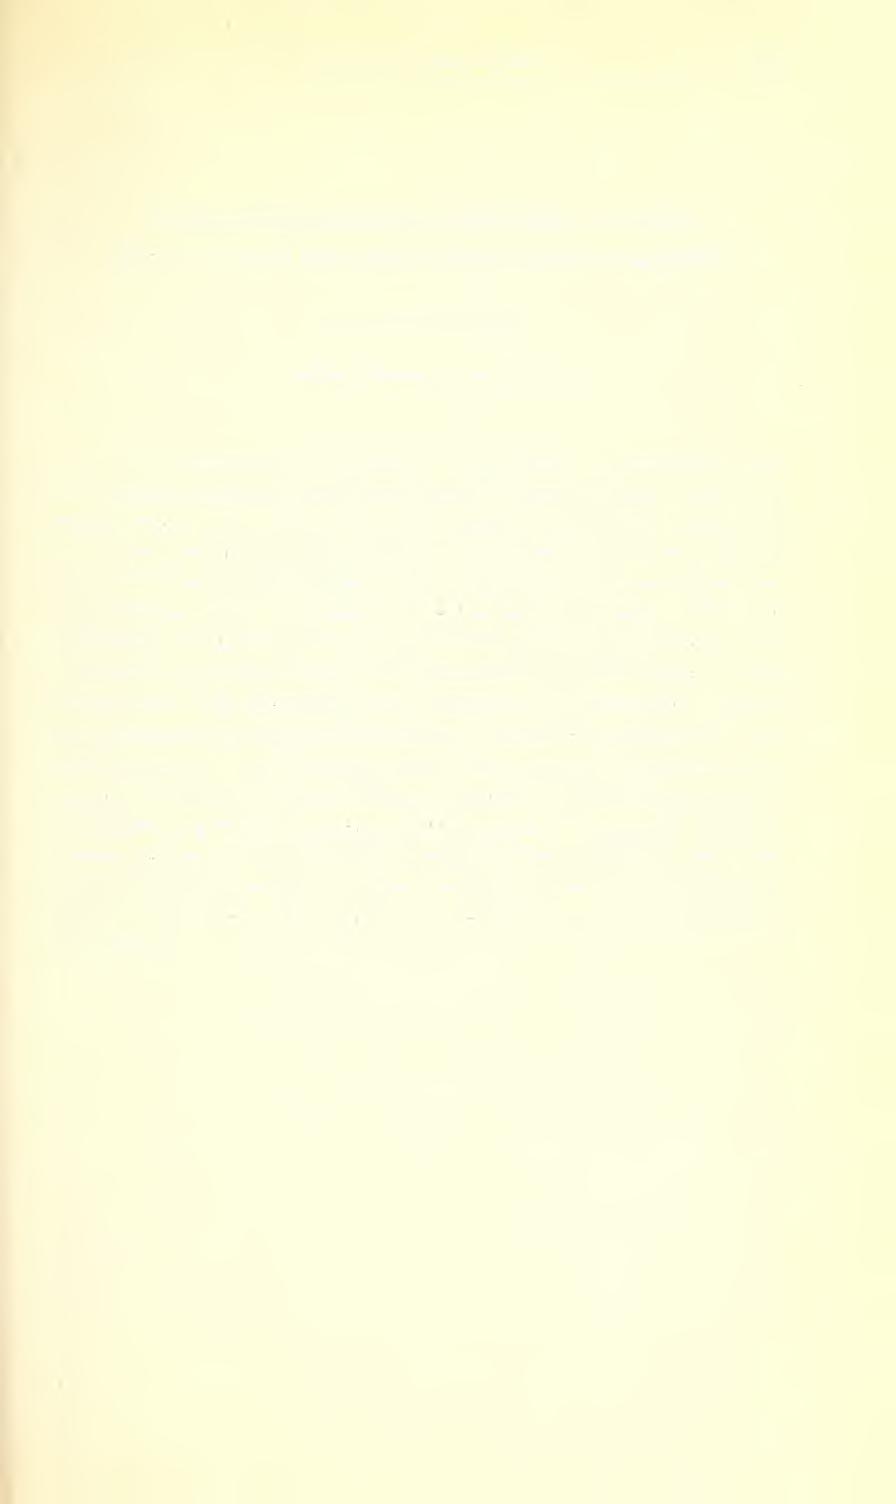 Ent. Arb. Mus. Frey lu, 1959 605 Chrysomelidenausbeute der Reise von Herrn Dr. h. c. Georg Frey nach Nord- und Mittelamerika (Col. Chrysomelidae) von Gerhard Scherer, Museum G.